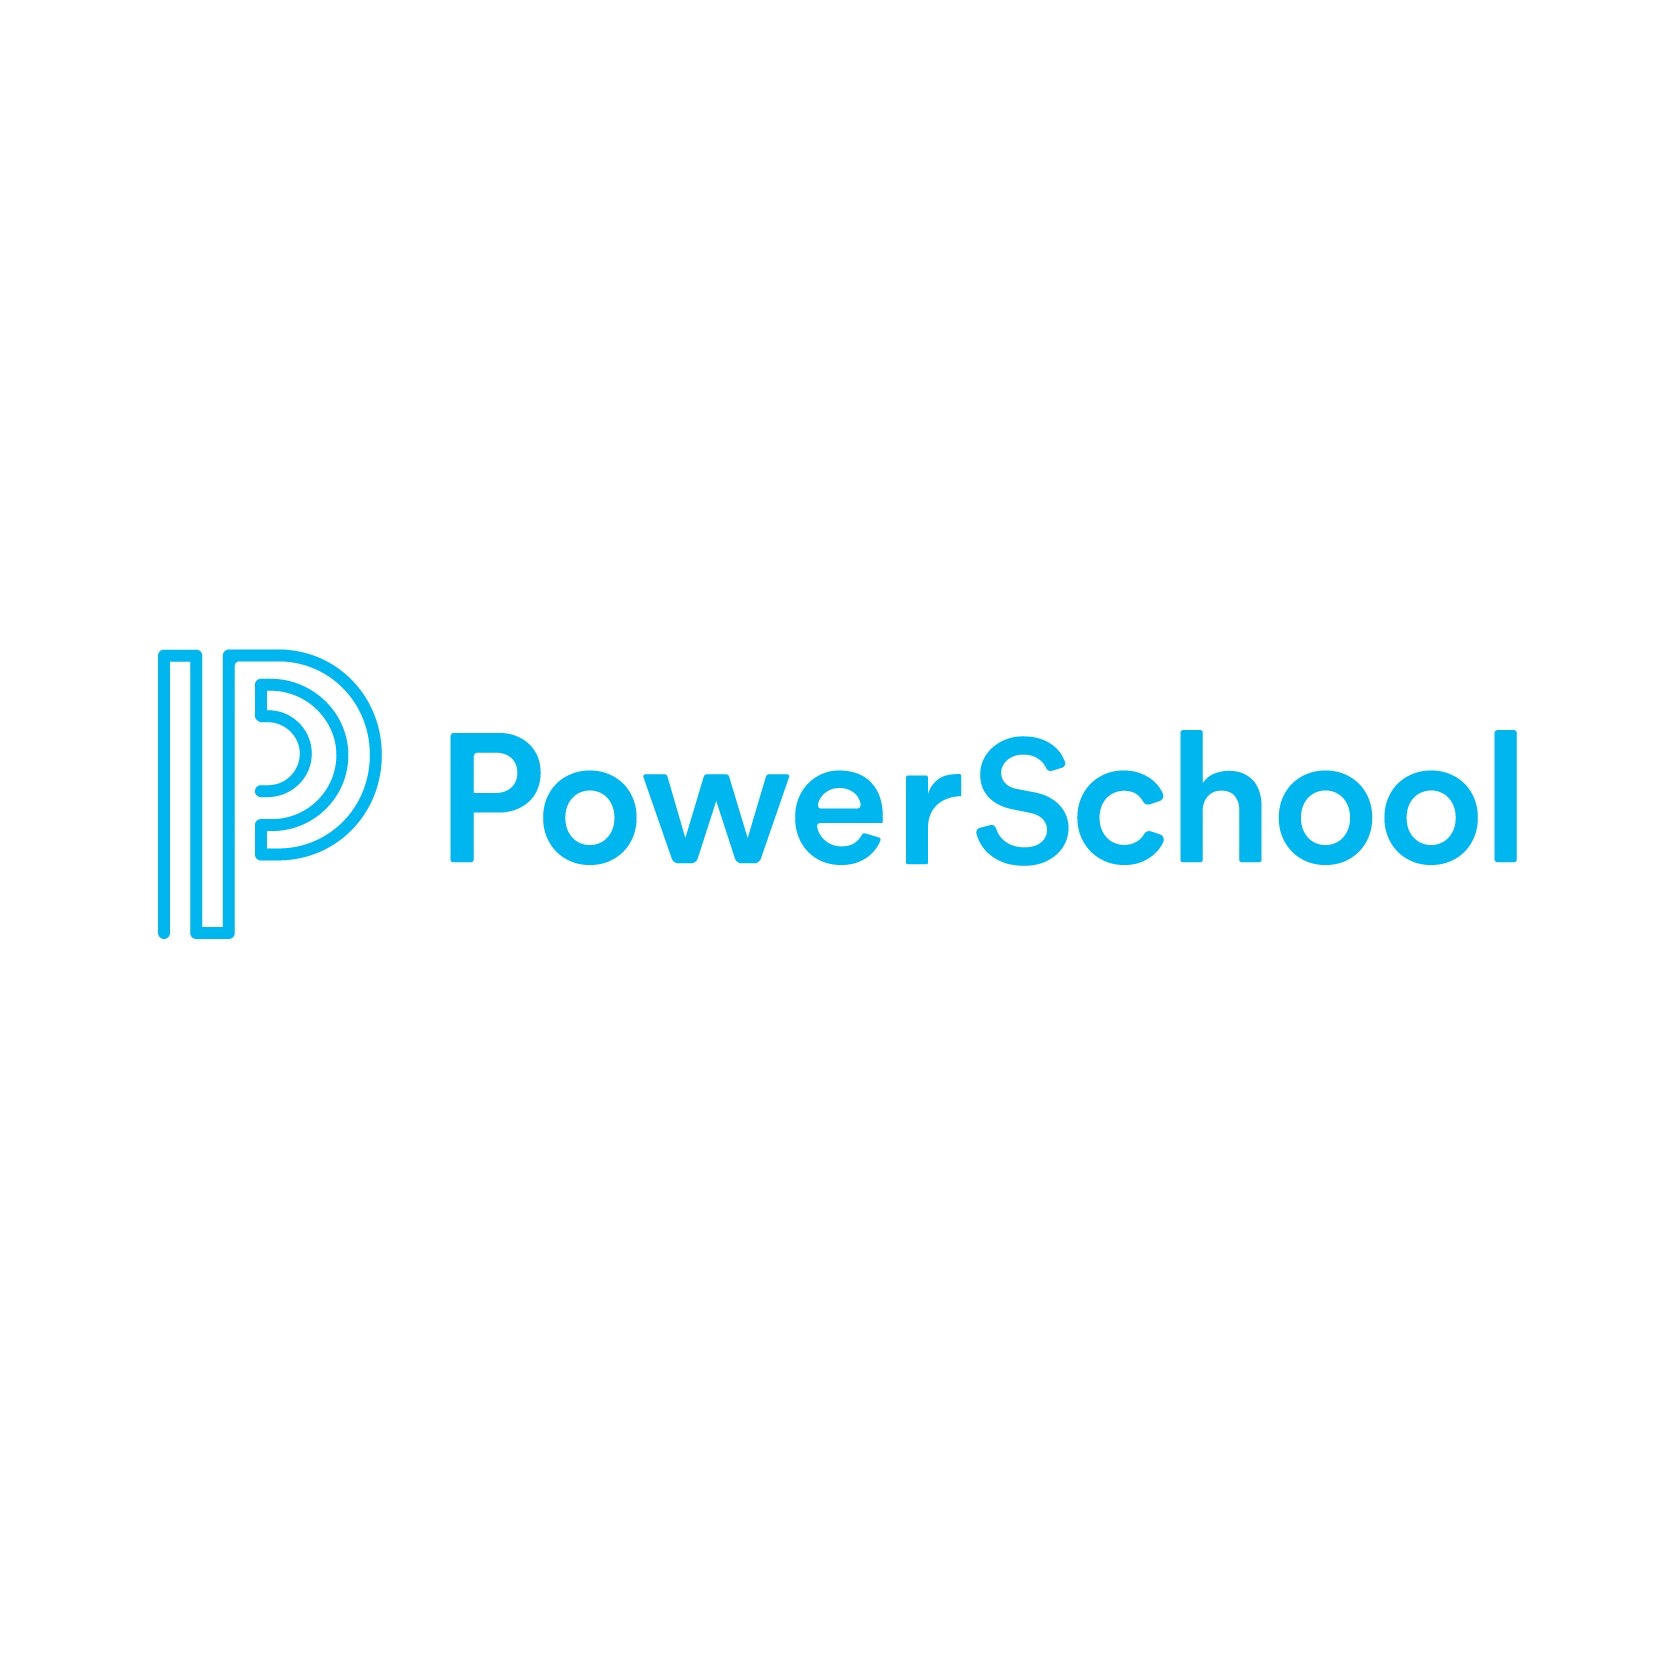 สามารถคอมเทค ร่วมกับ Power School จัดงานสัมมนาออนไลน์สำหรับสถาบันการศึกษา